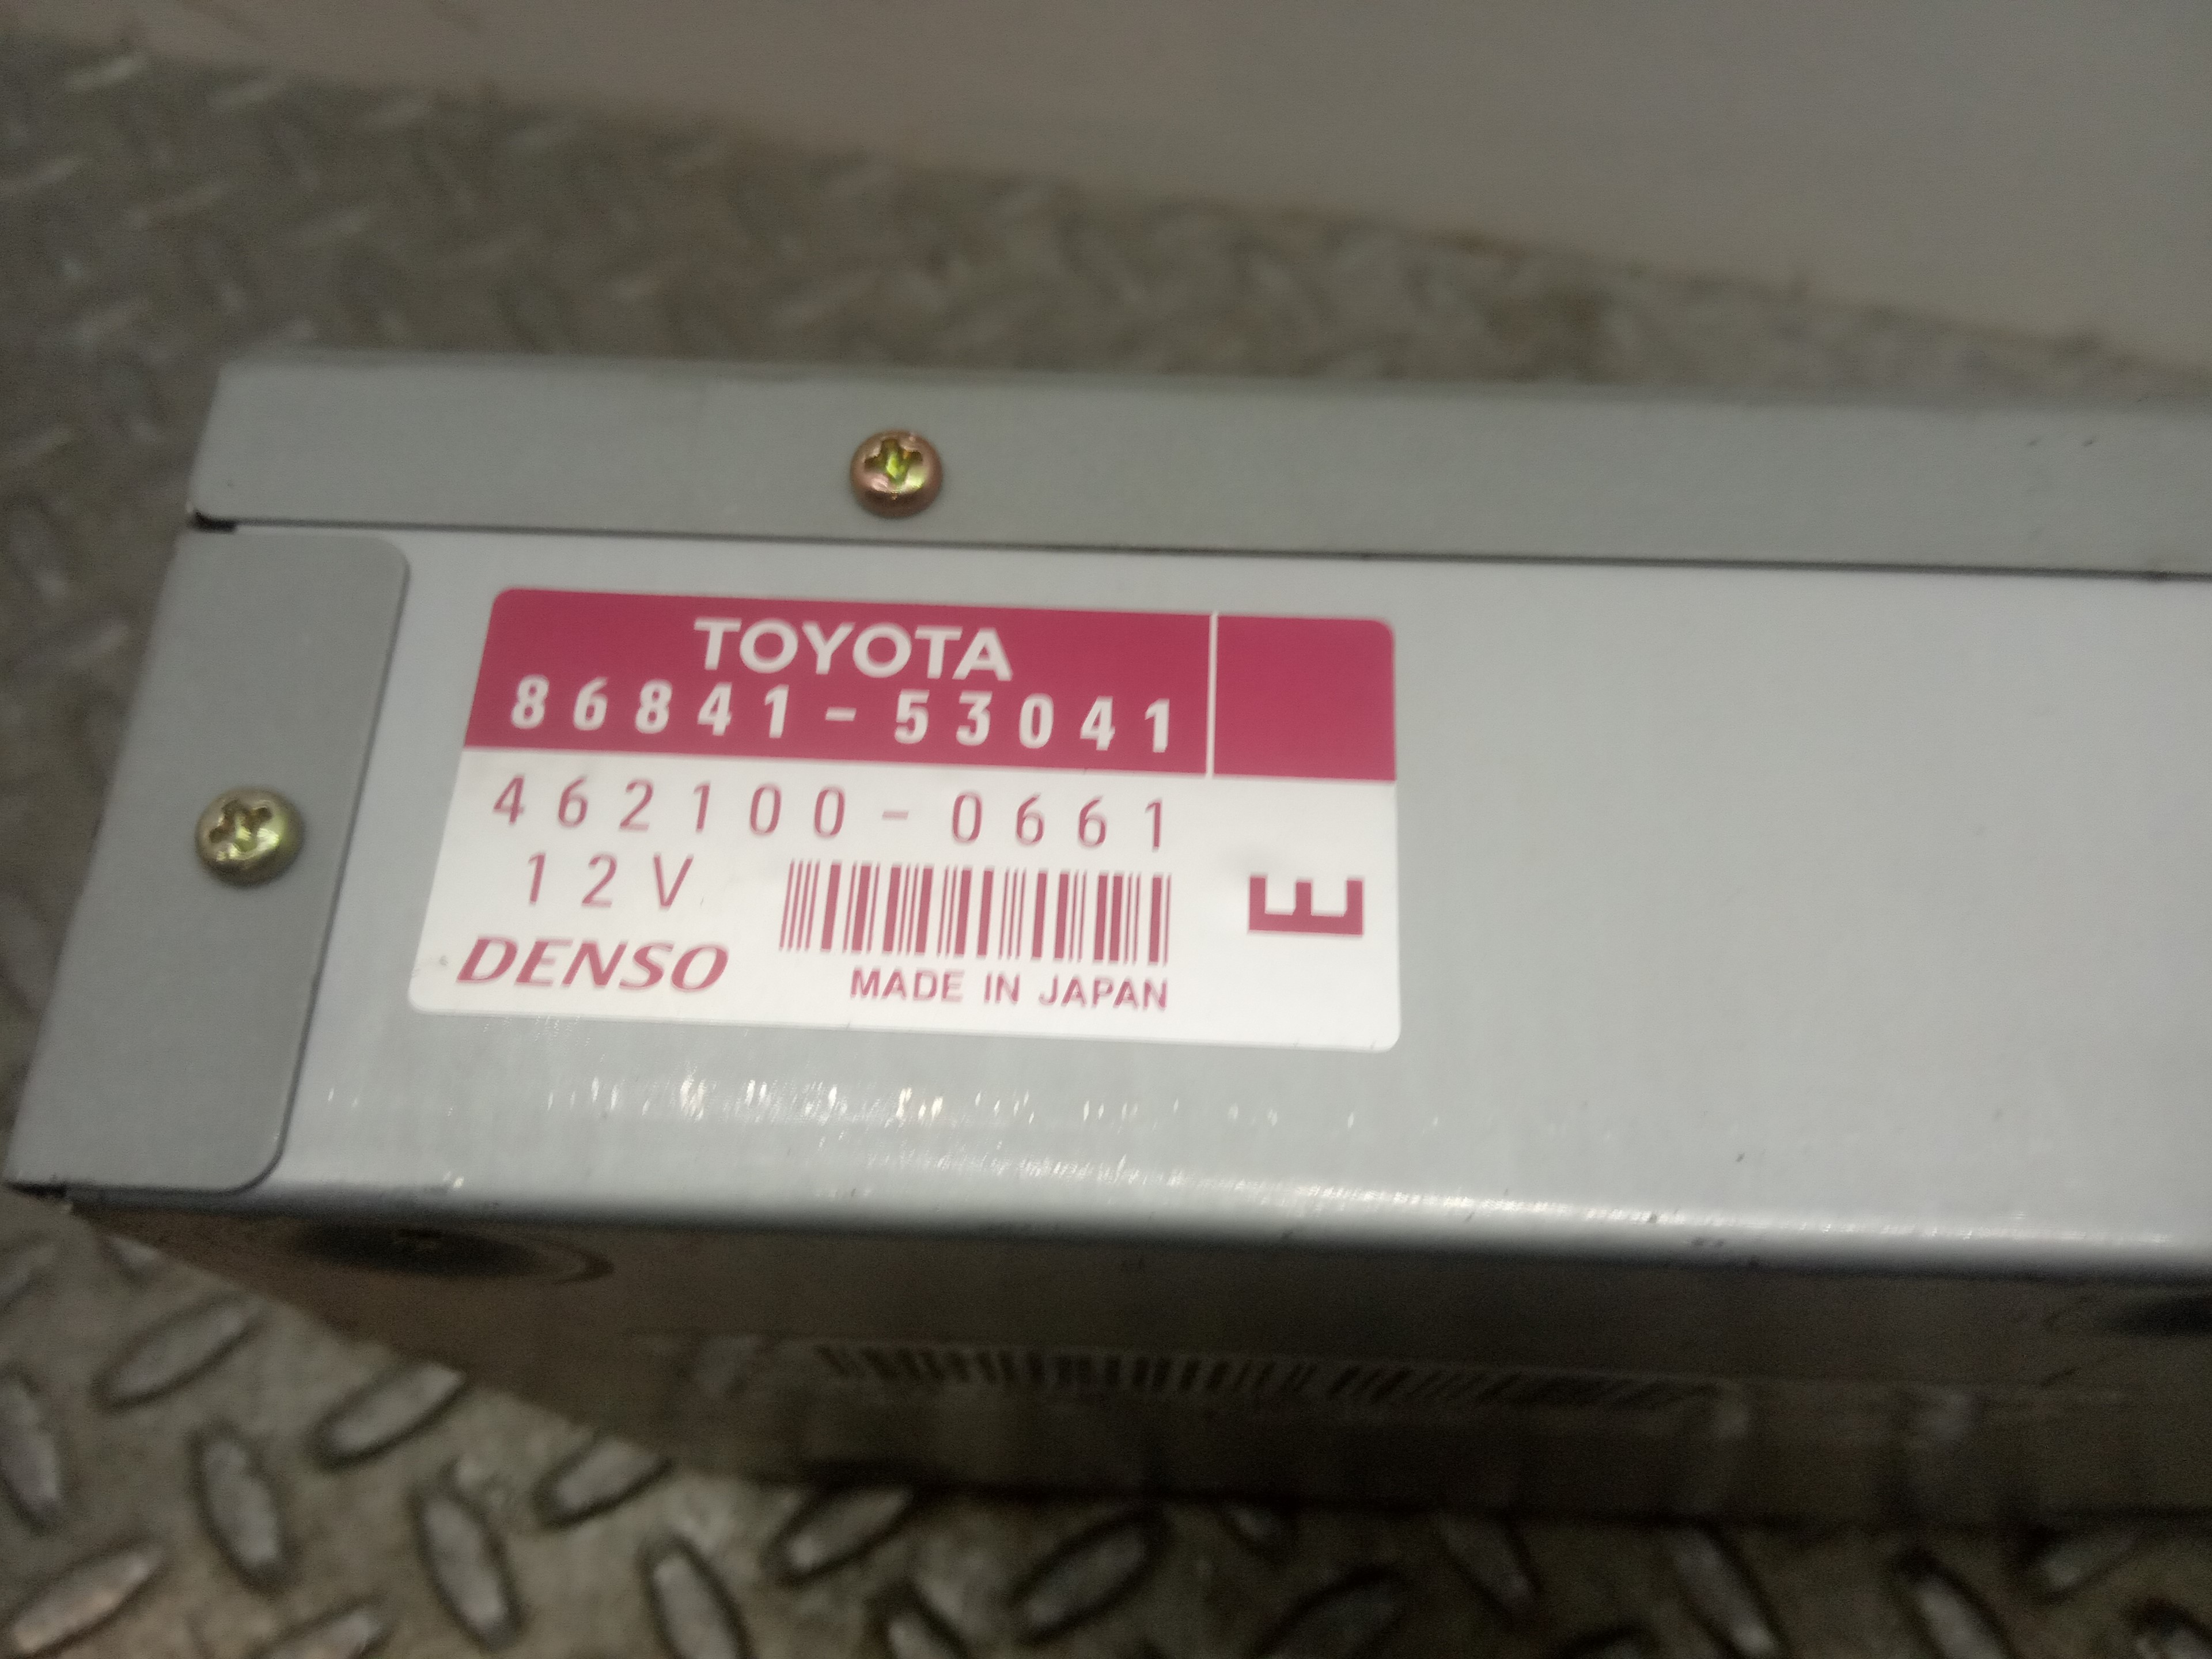 TOYOTA Avensis 2 generation (2002-2009) Muzikos grotuvas su navigacija 8684153041, 4621000661 23691979